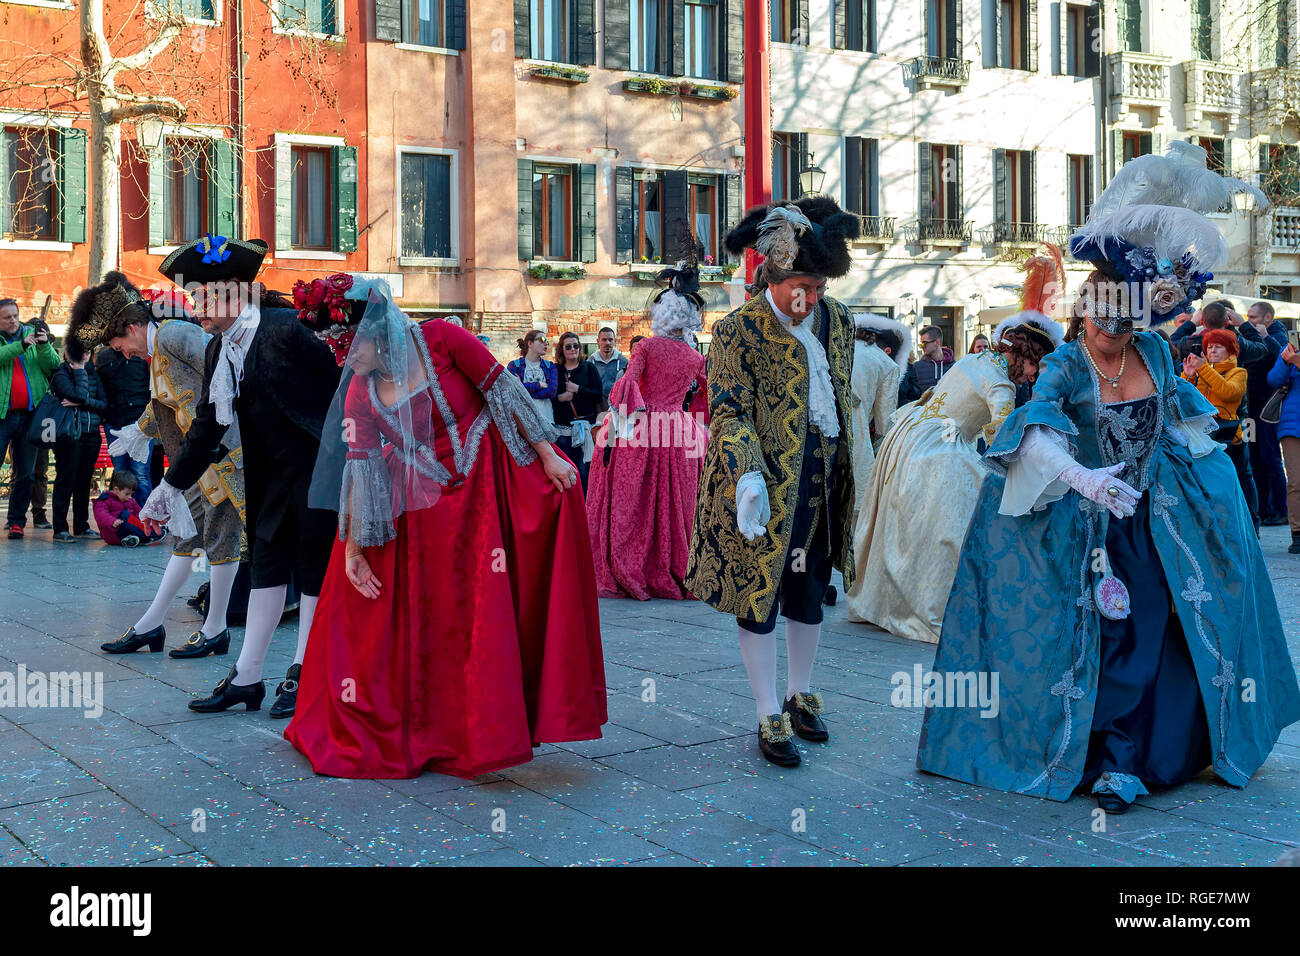 Gruppo di persone che indossano costumi tipici e maschere danzanti sul piccolo quadrato durante il famoso e tradizionale annuale di carnevale a Venezia. Foto Stock